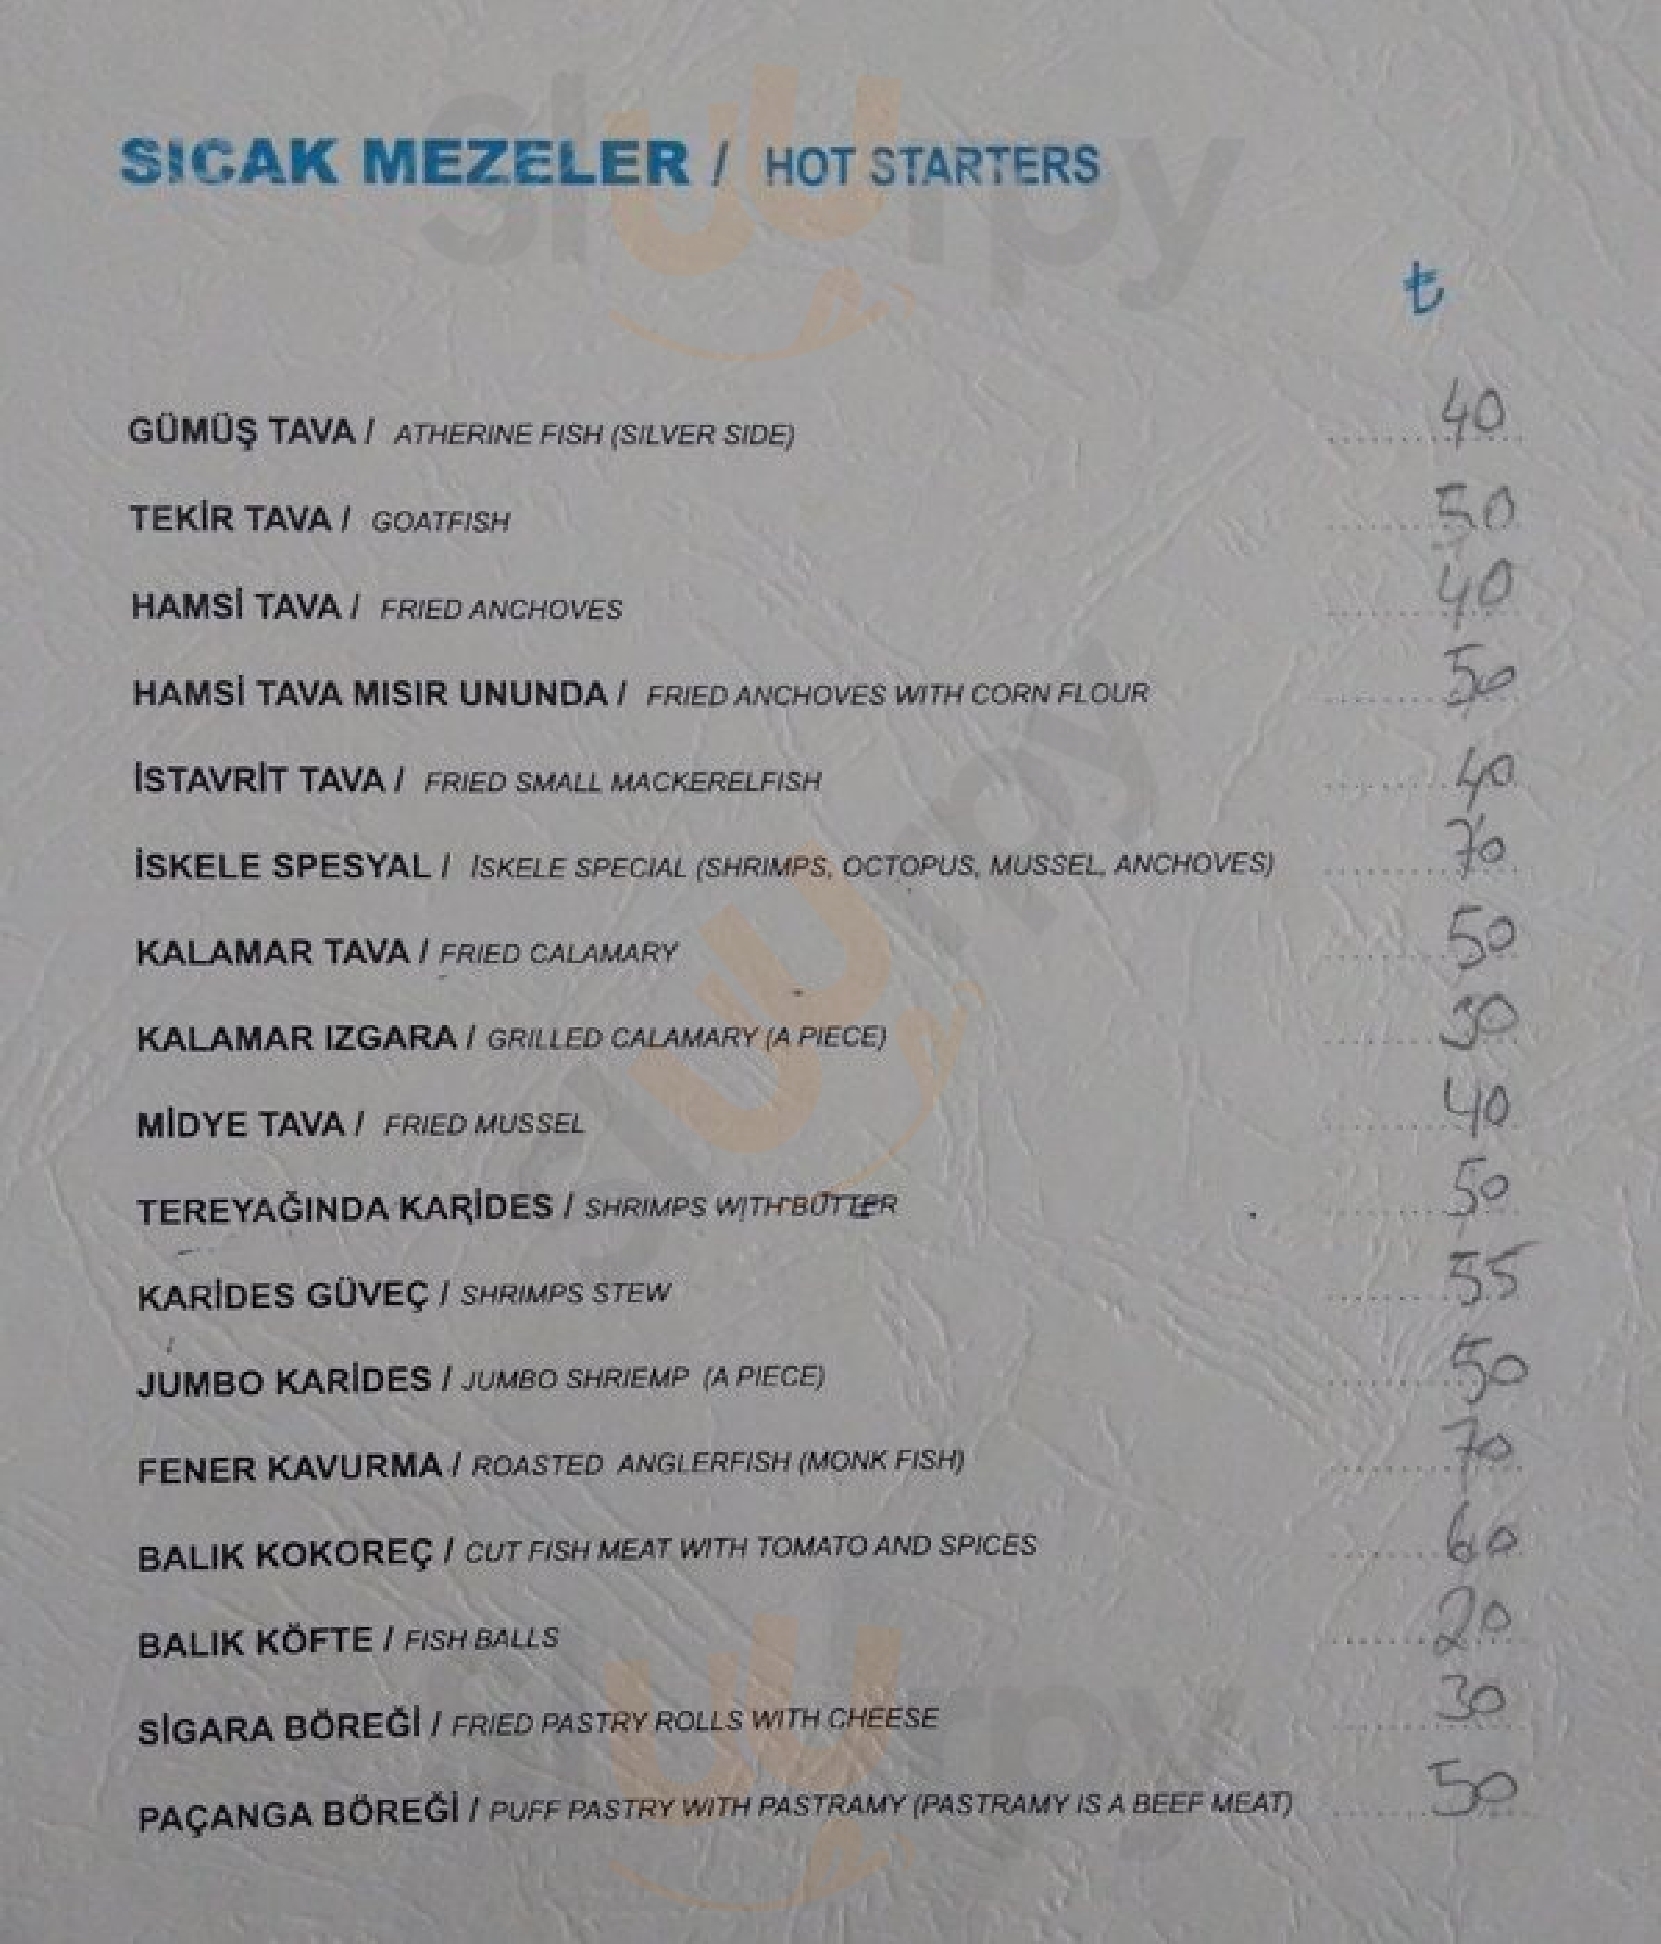 Rumeli Hisarı İskele Restaurant İstanbul Menu - 1